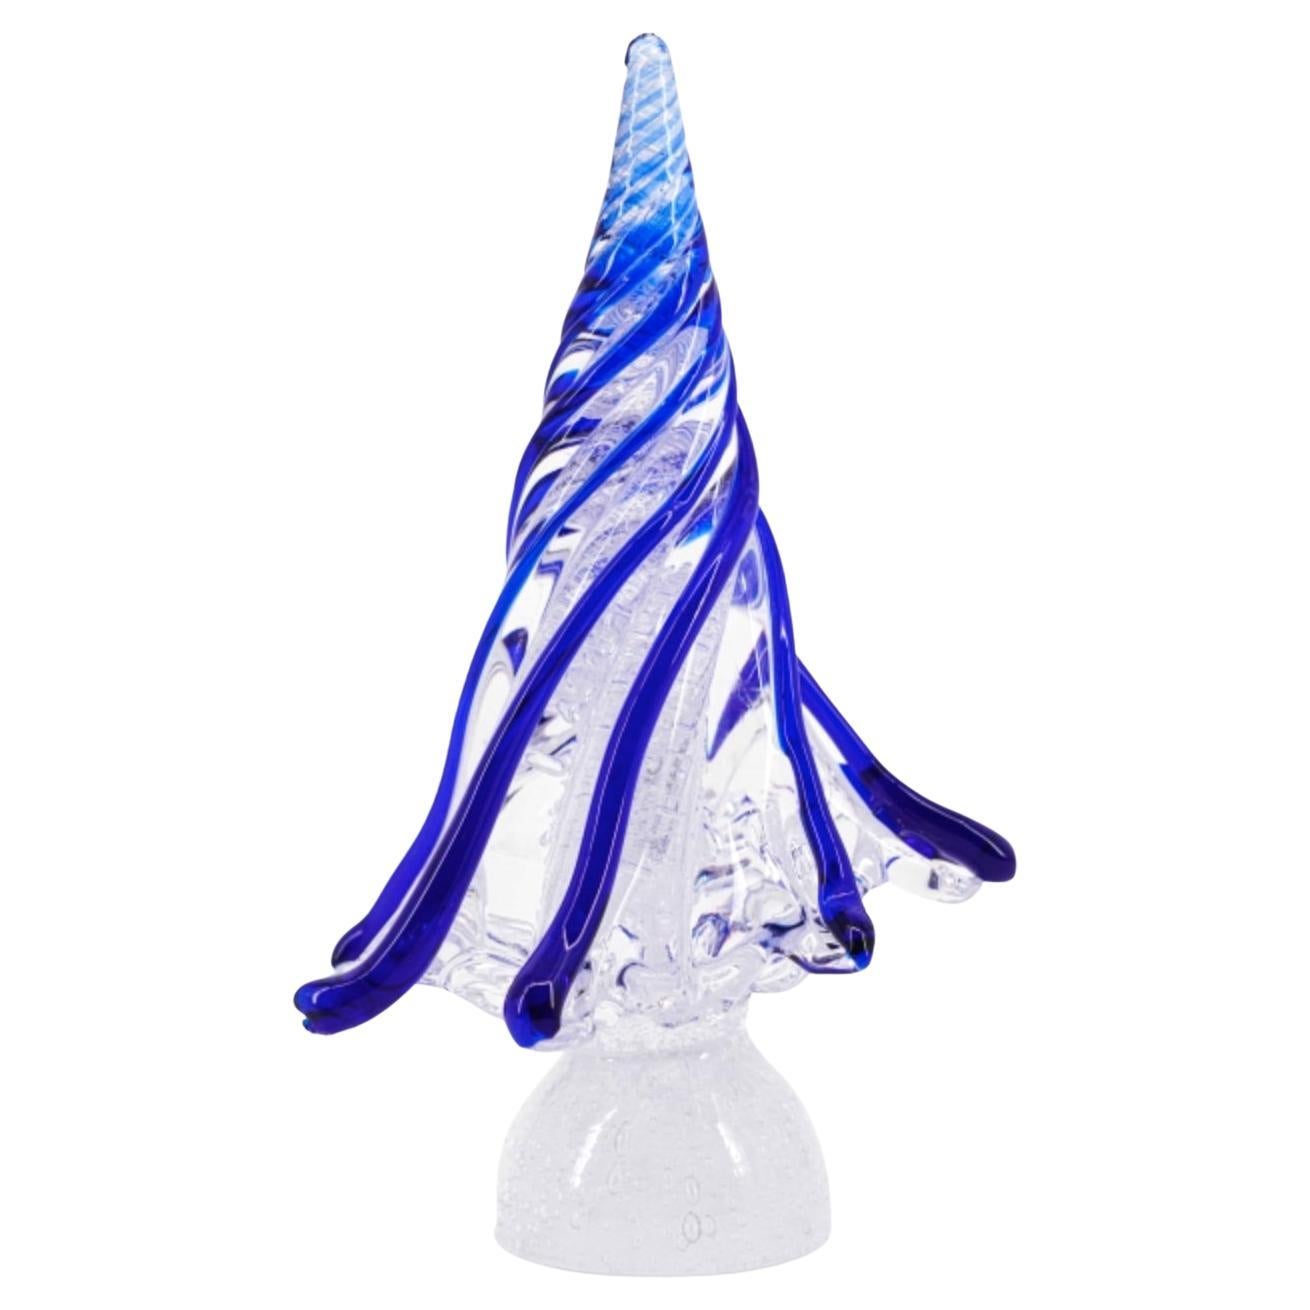 Weihnachtsbaum Klar und Blau  Made Murano Glass in Artistics Blown Murano Glass